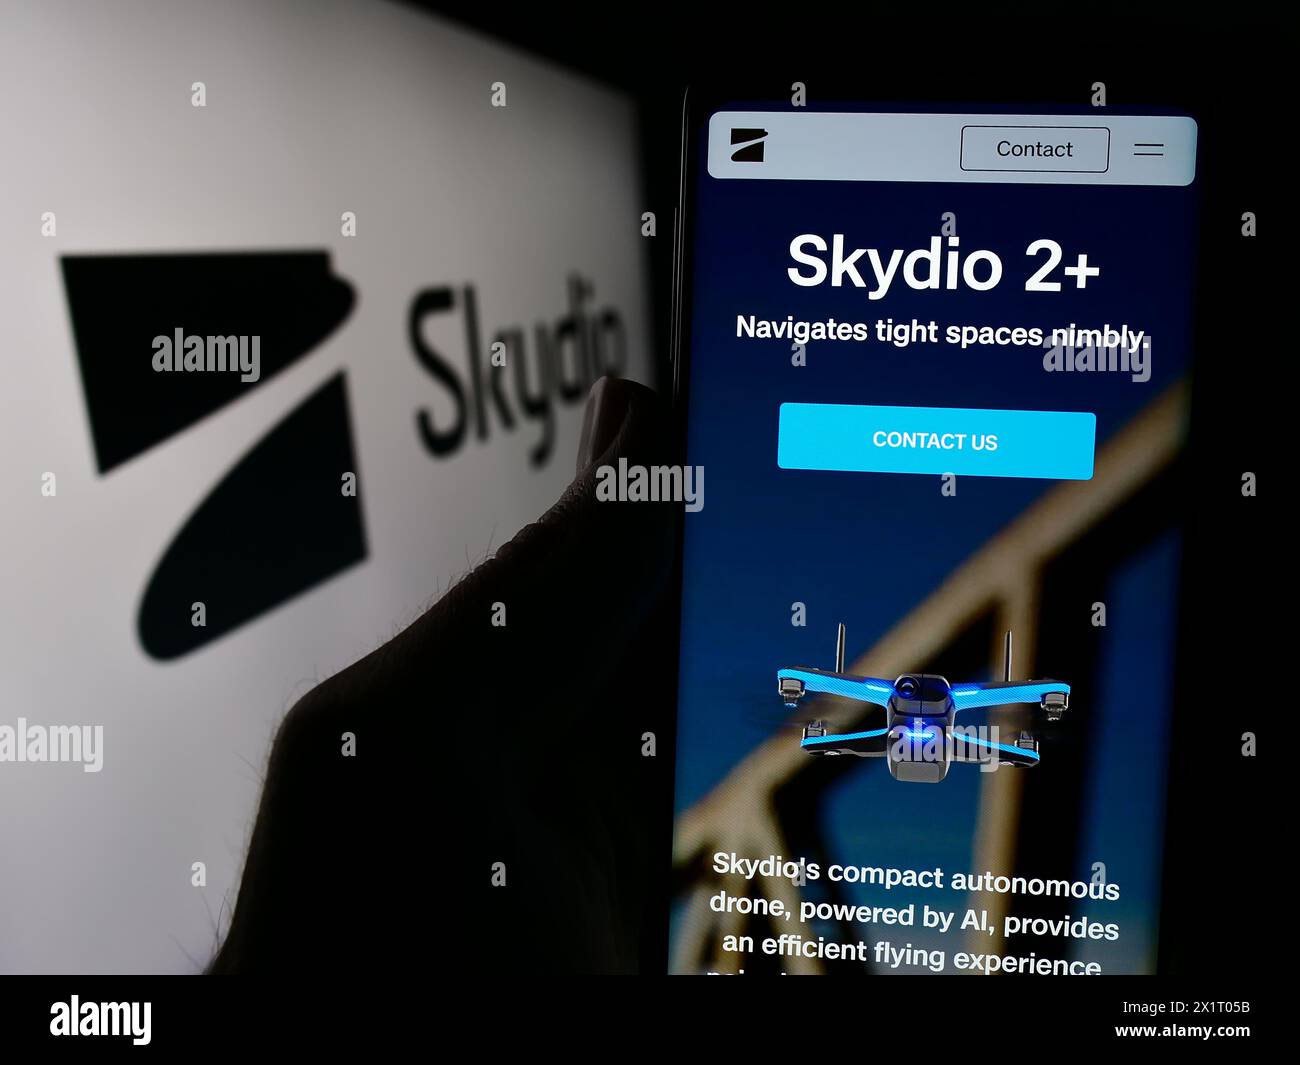 Persona che detiene un cellulare con pagina web della società di produzione di droni Skydio Inc. Davanti al logo aziendale. Messa a fuoco al centro del display del telefono. Foto Stock